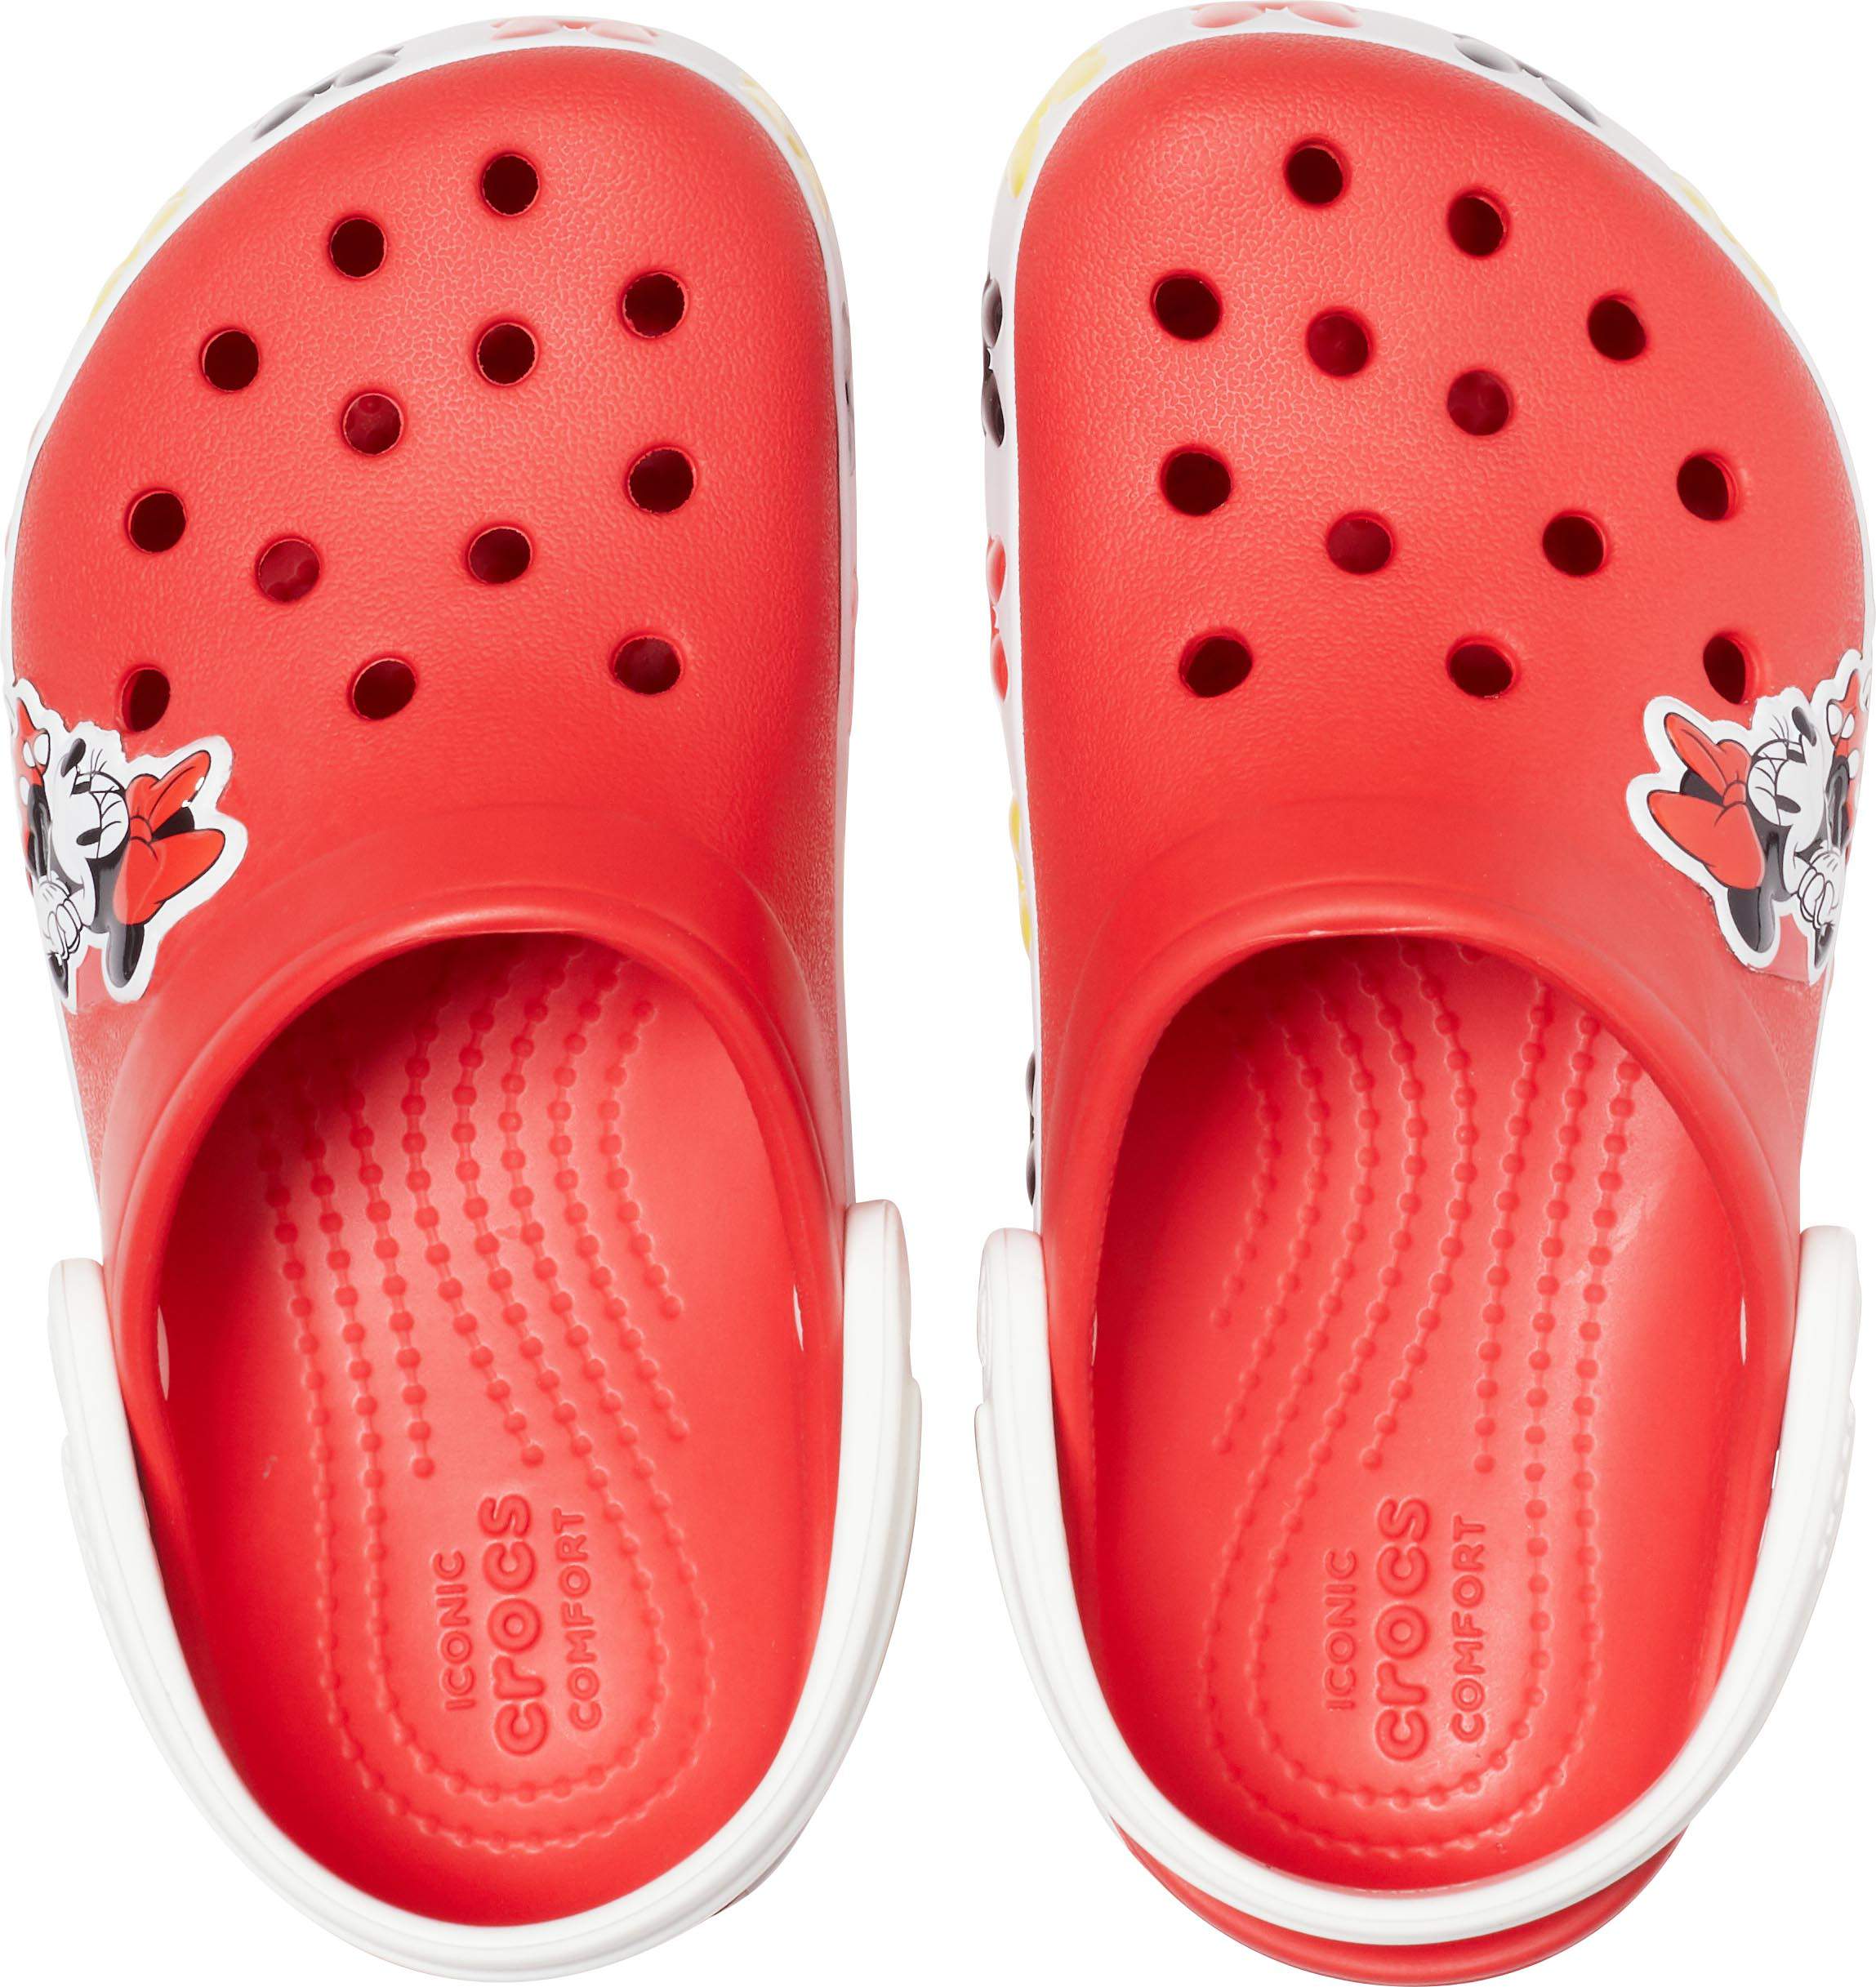 crocs minnie mouse sandals